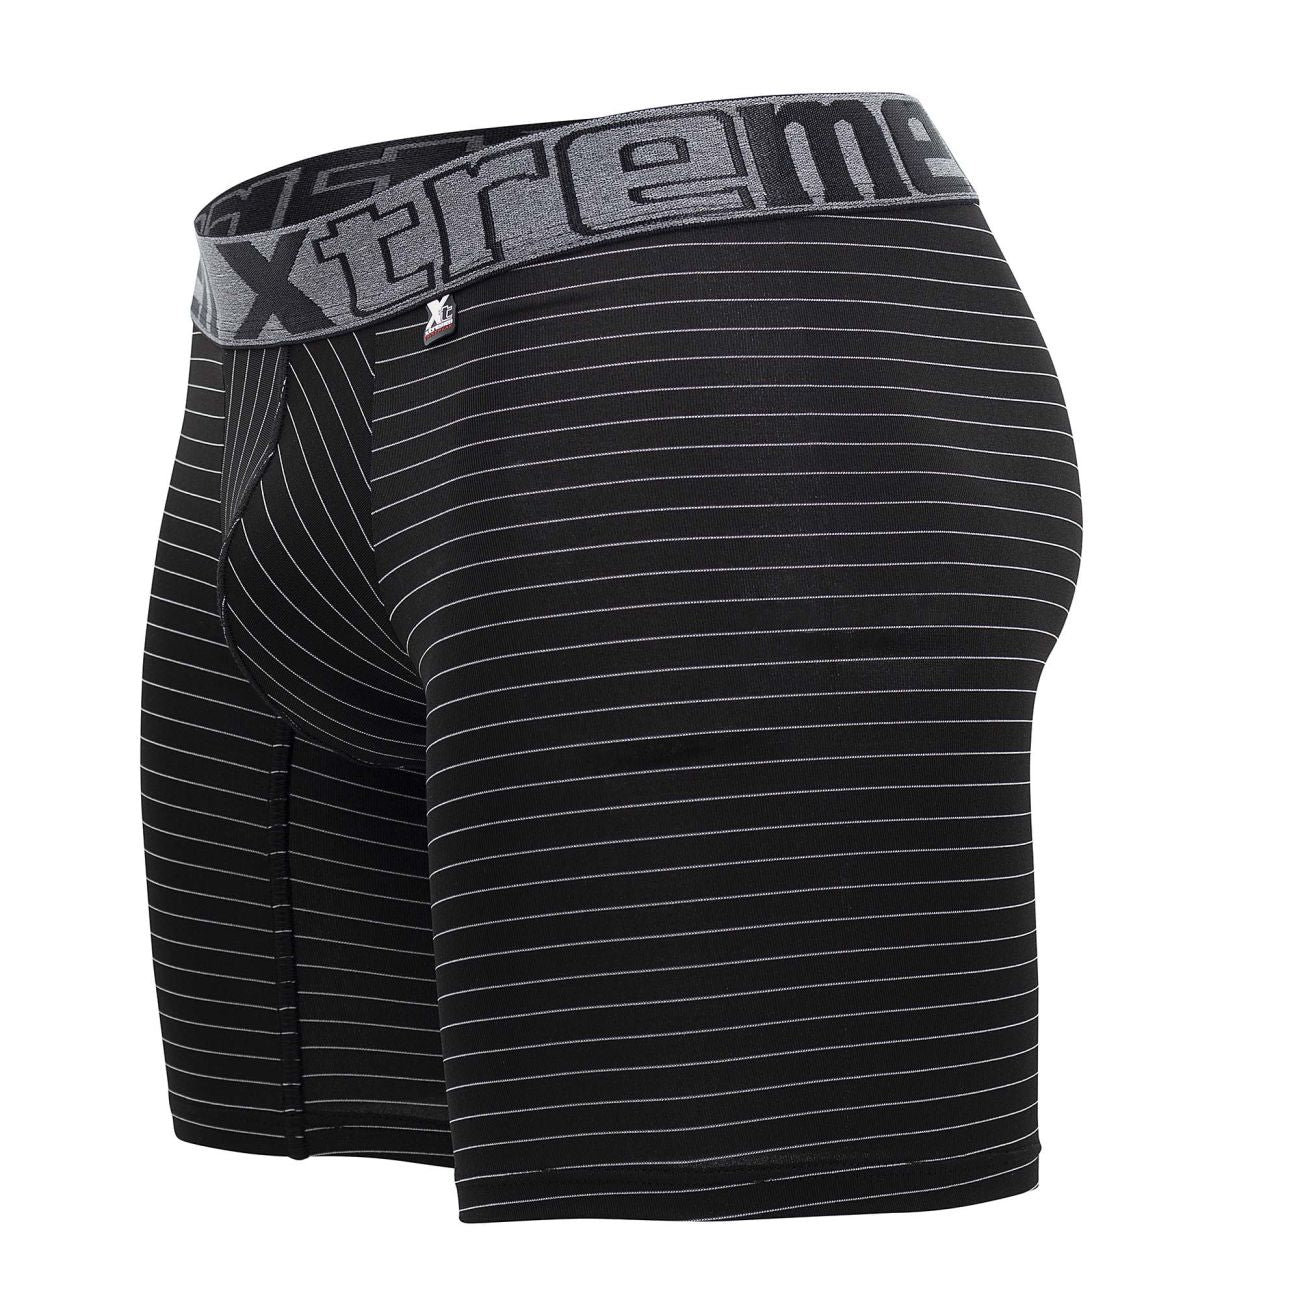 Xtremen 70004 Striped Boxer Briefs